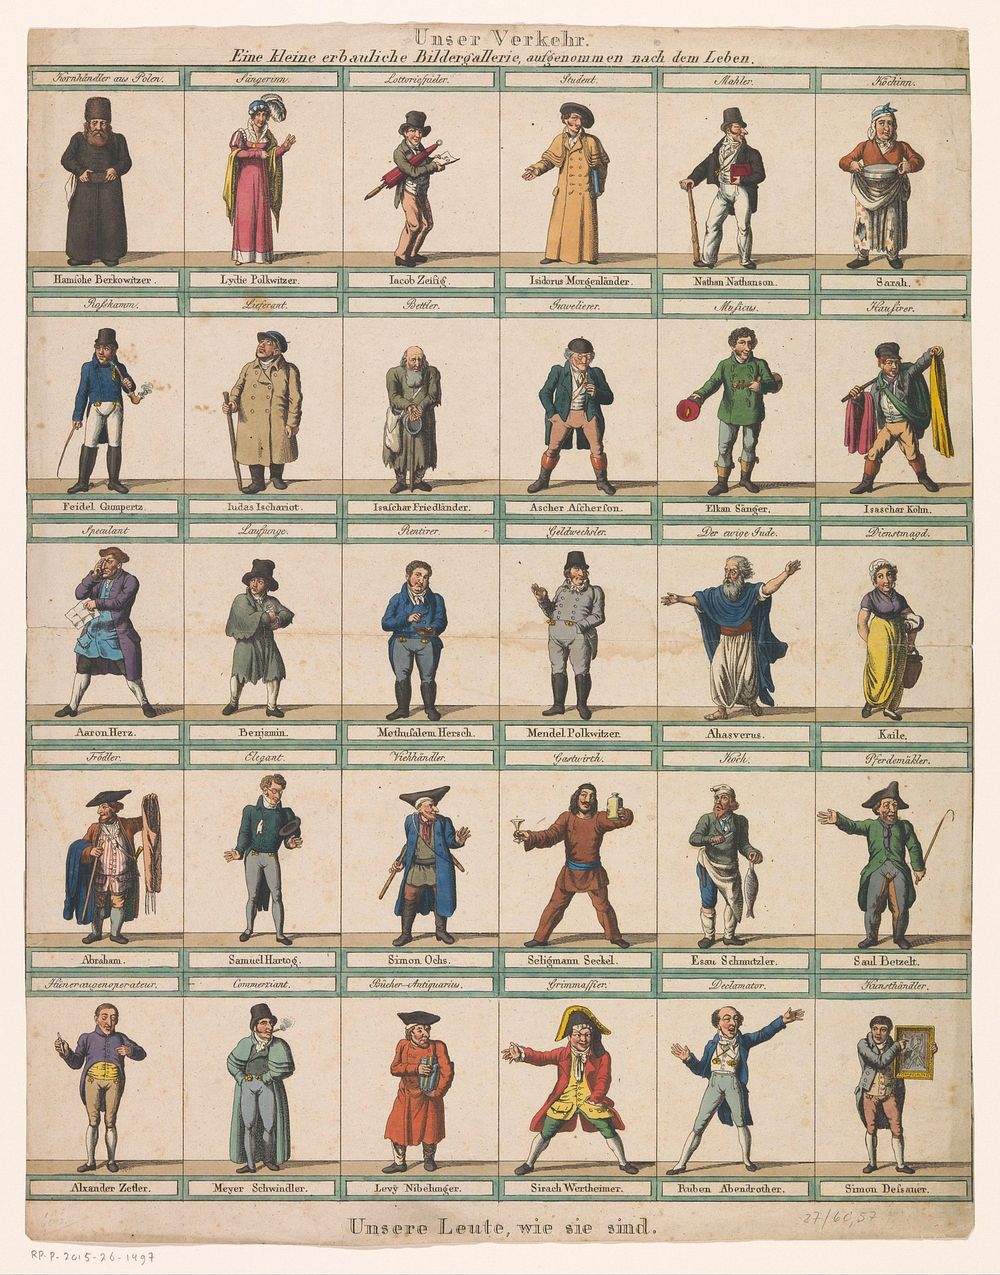 Blad met dertig karikaturen van joodse mannen en vrouwen (1819) by Johann Michael Voltz